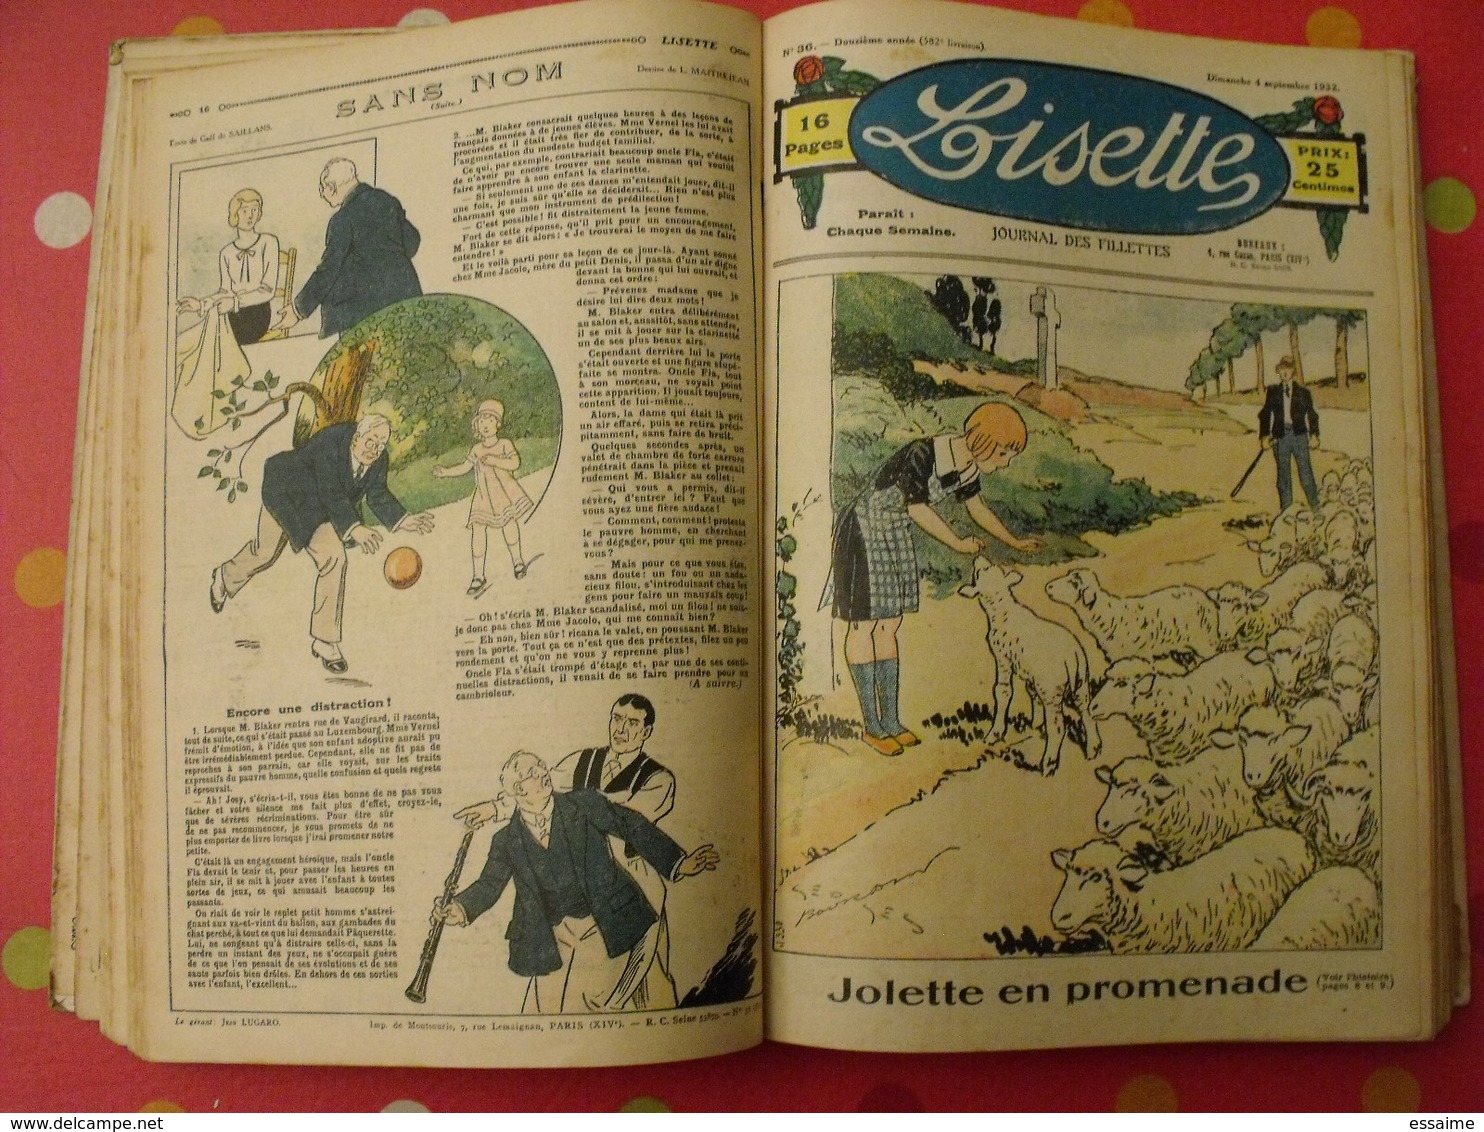 Lisette, album 11 XI. 1932-1933. recueil reliure. le rallic levesque maitrejean cuvillier bourdin dot